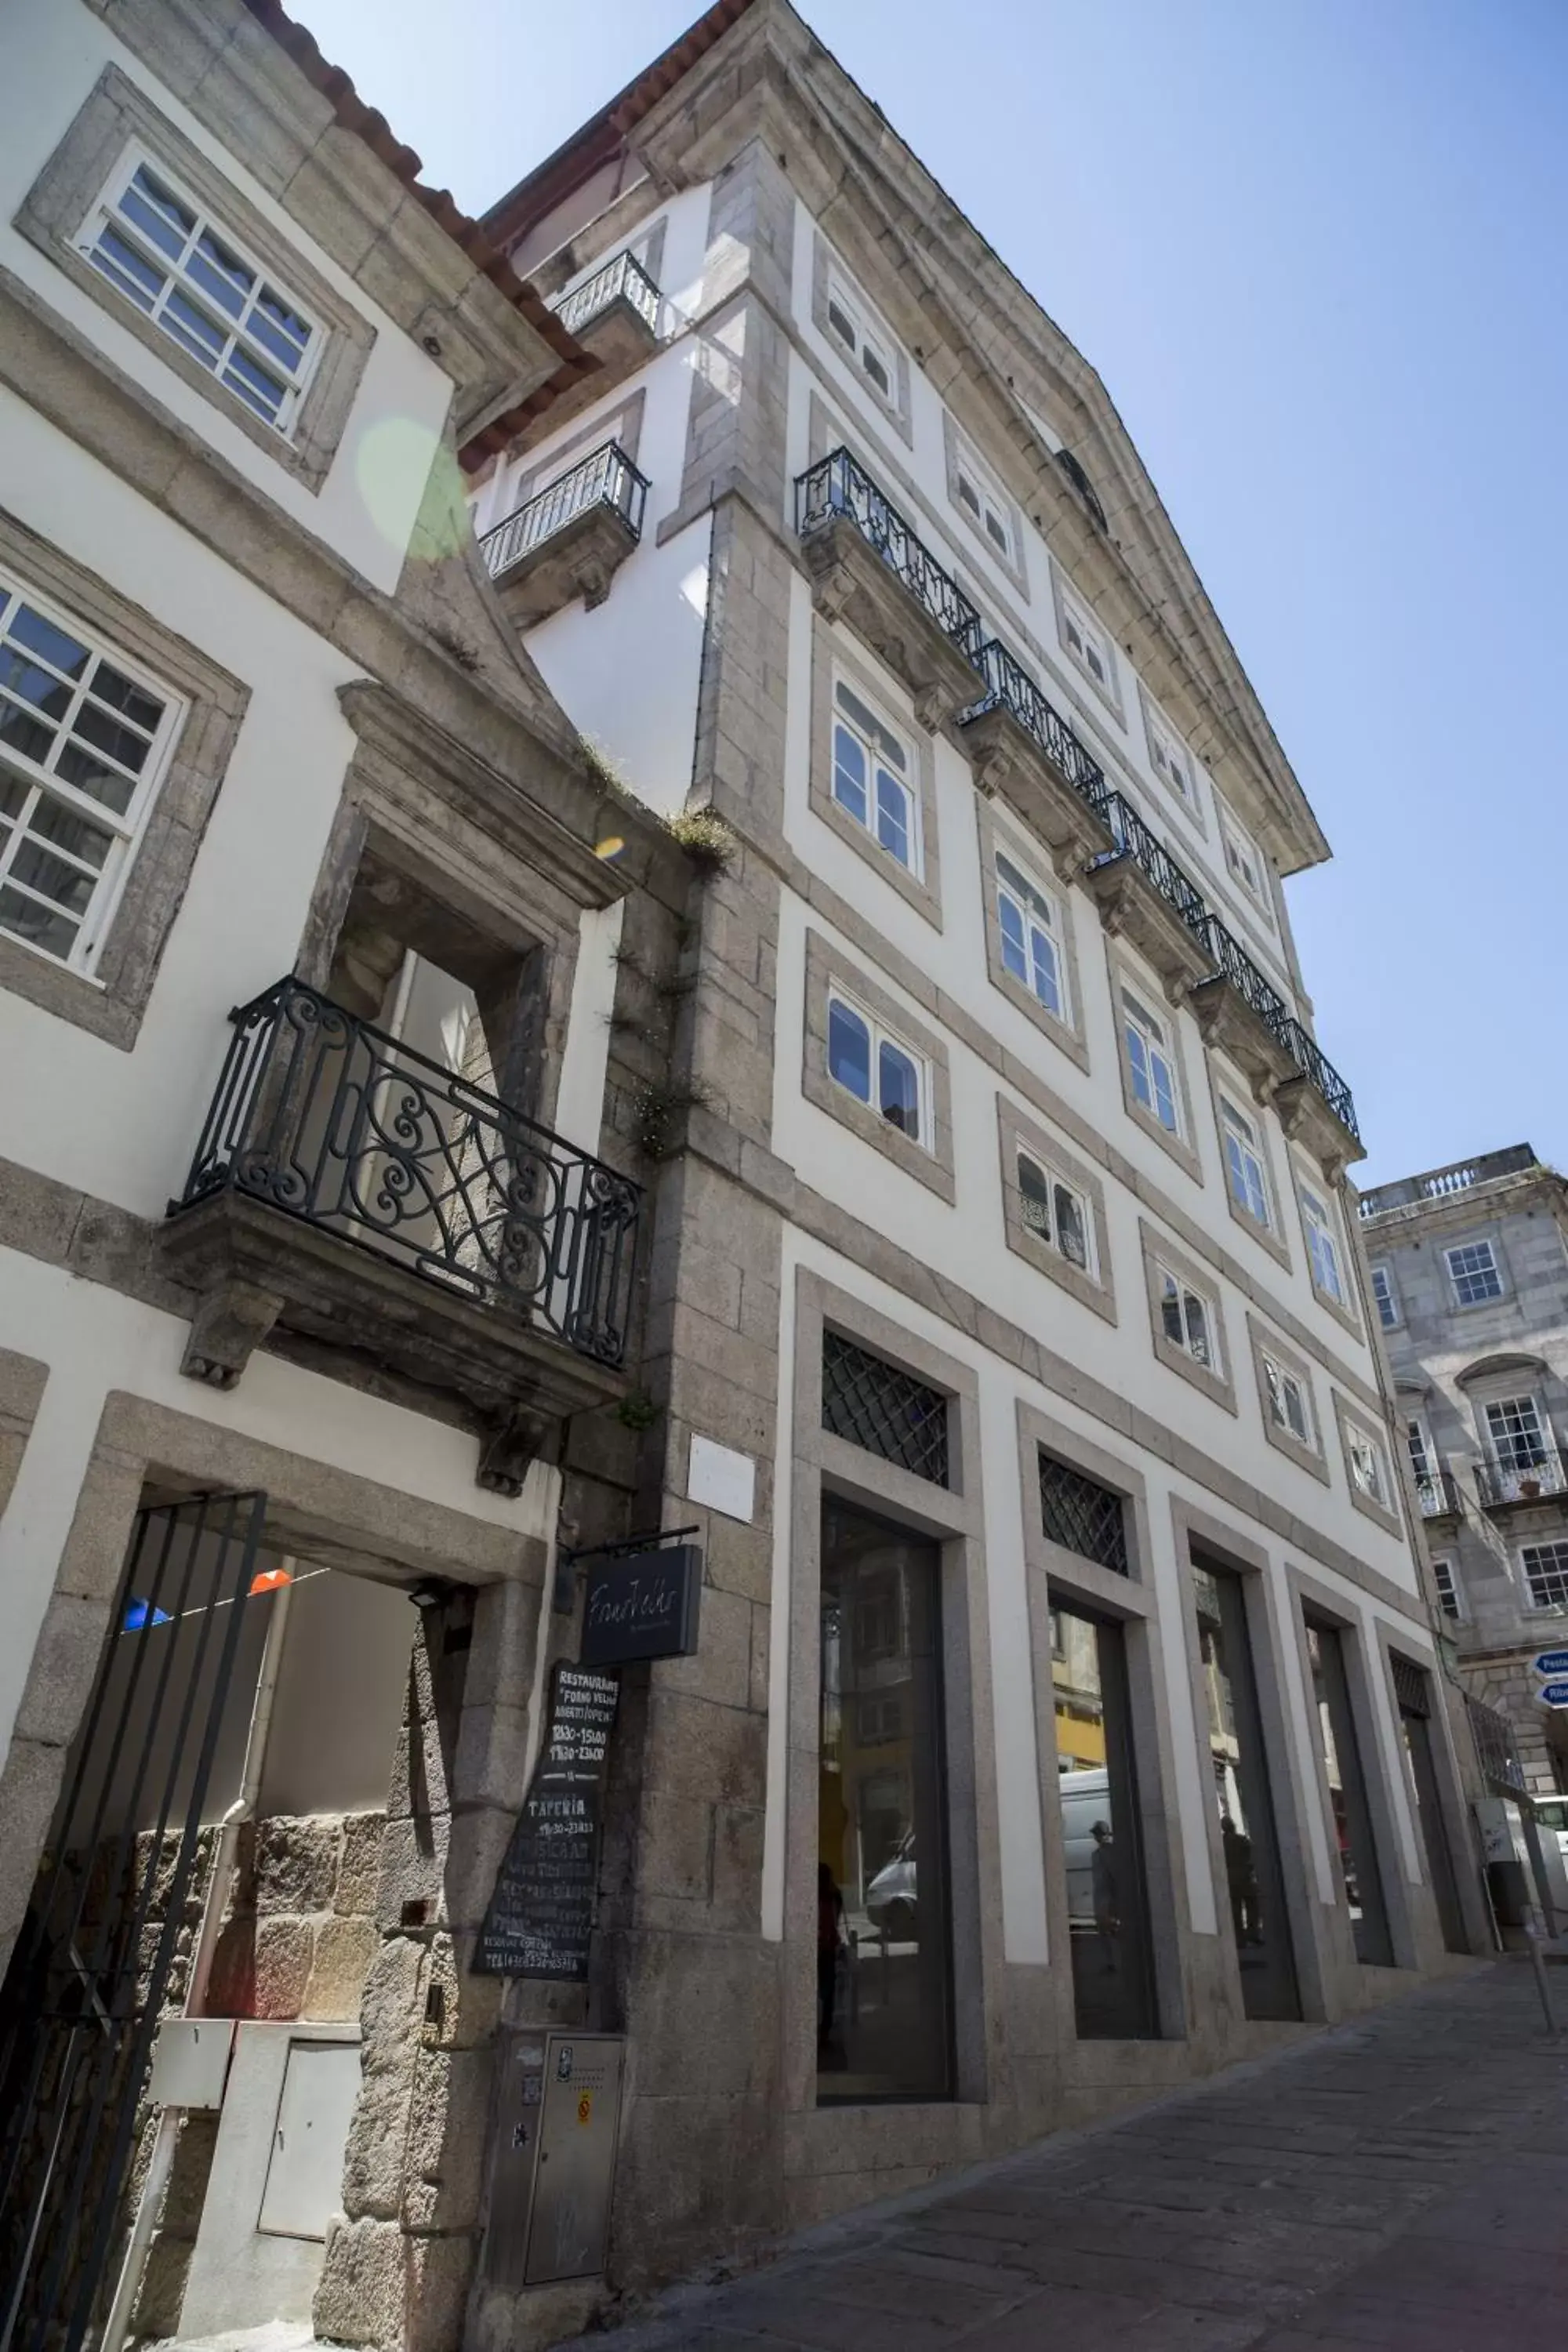 Facade/entrance, Property Building in Hotel Carris Porto Ribeira